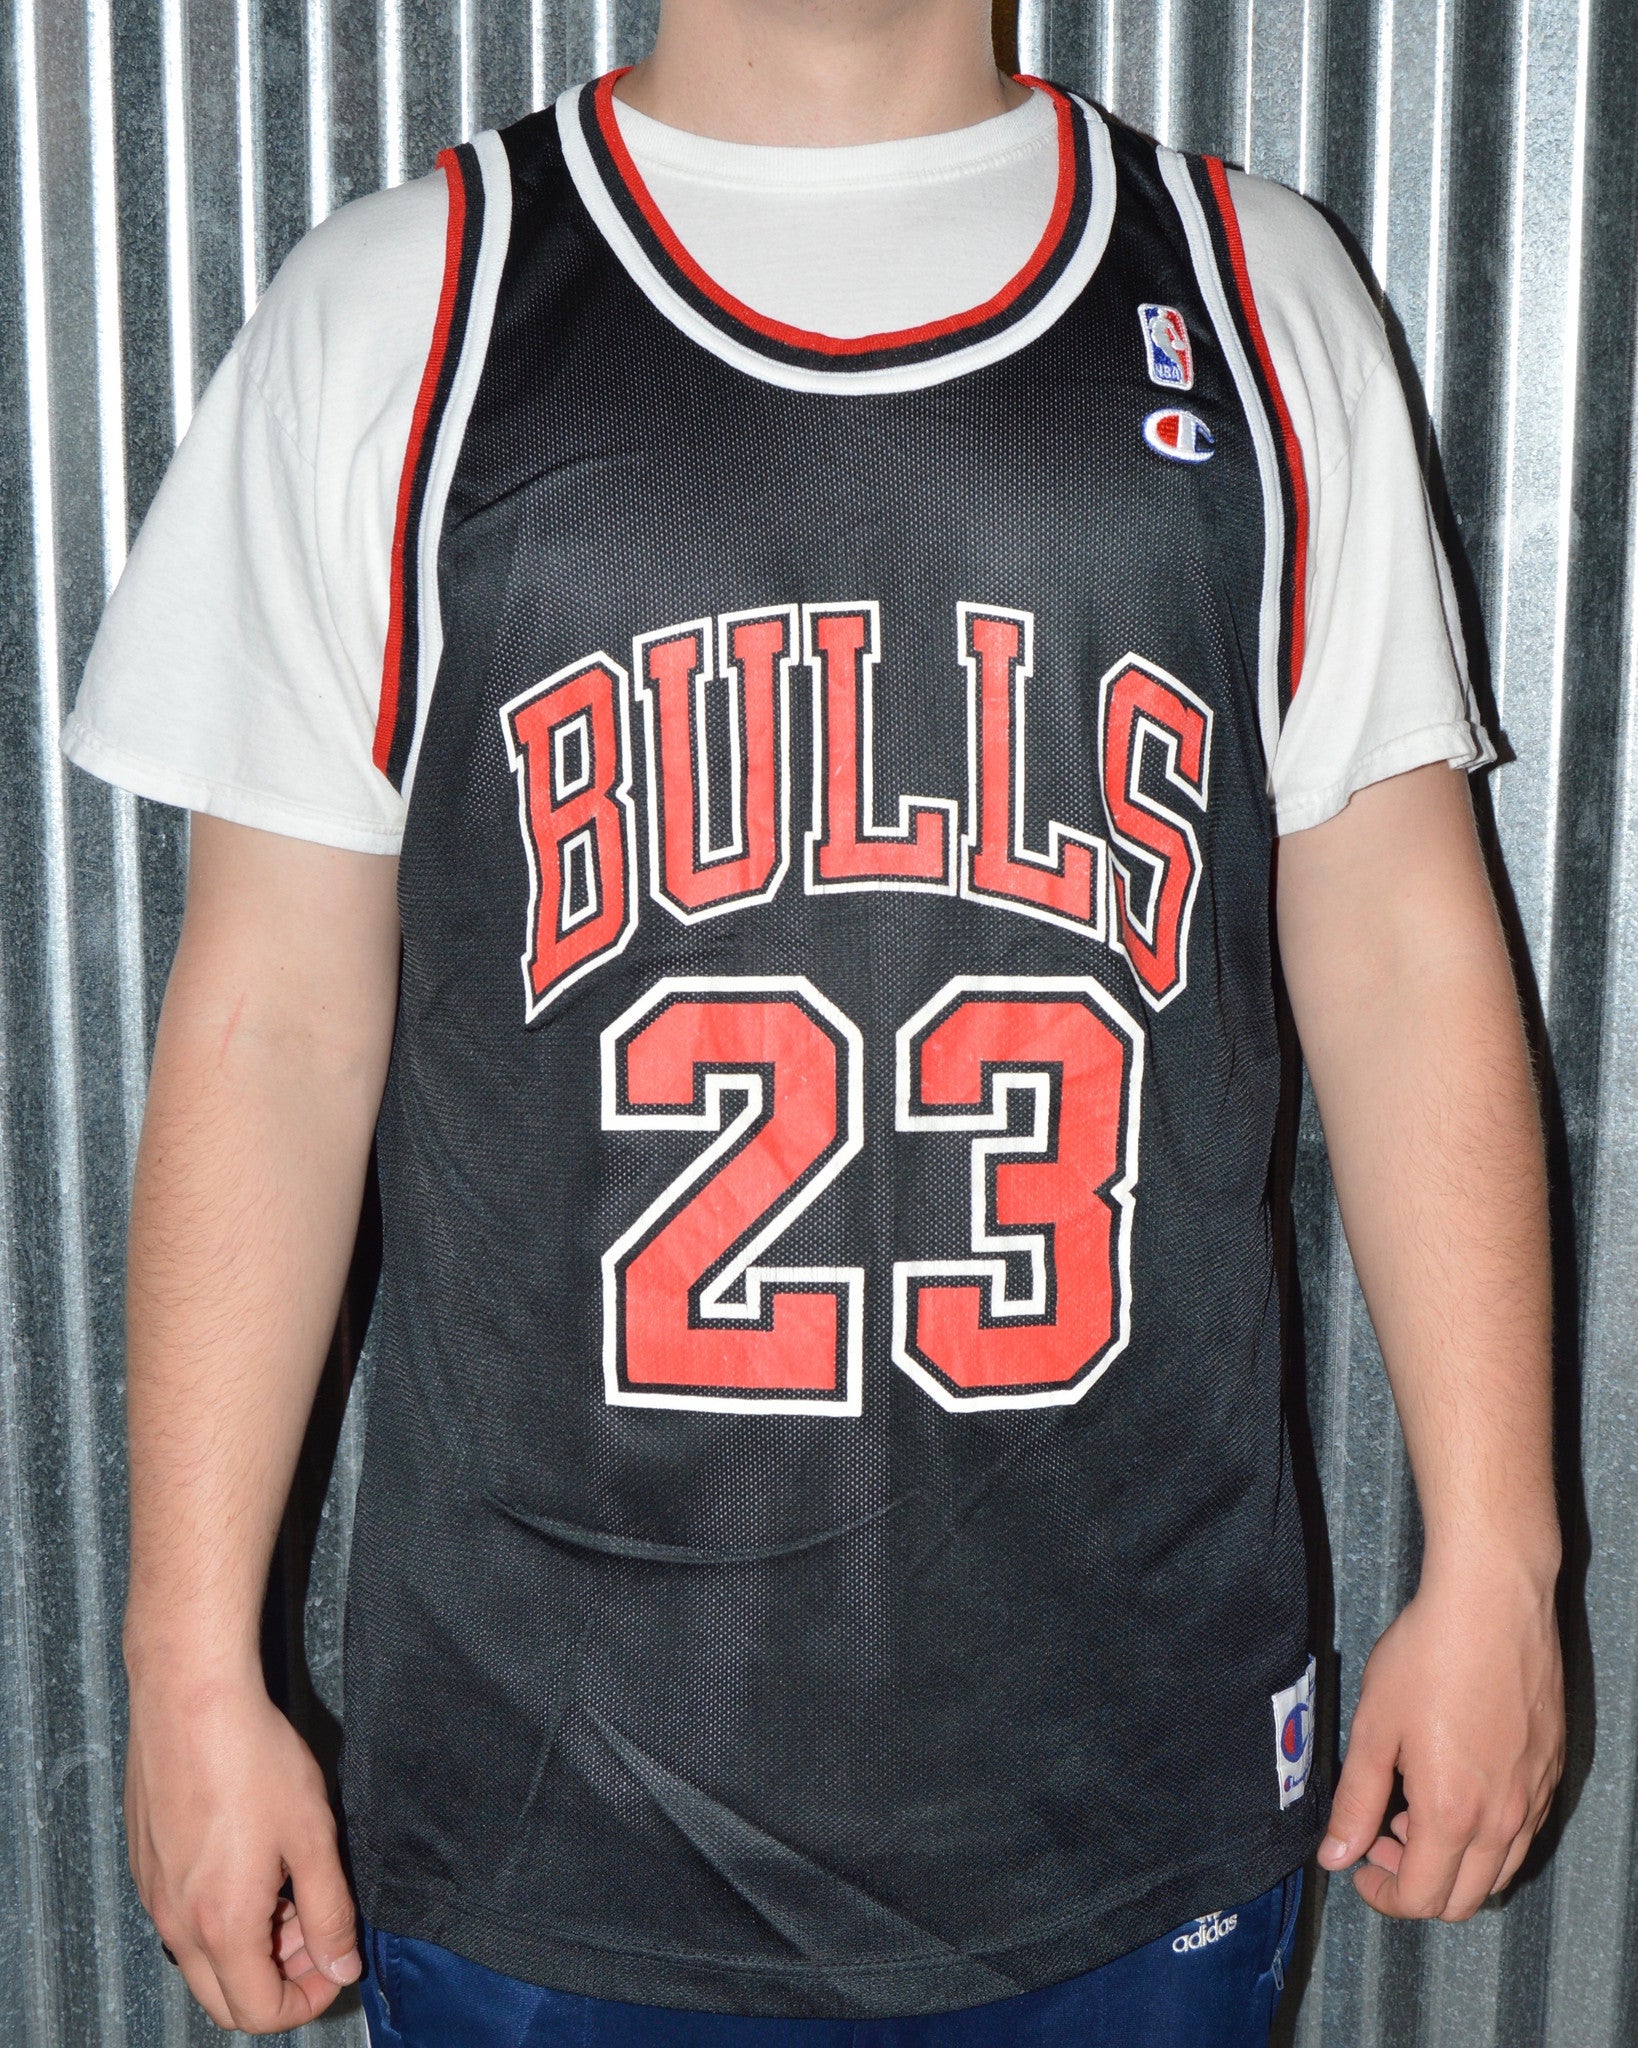 size 48 basketball jersey